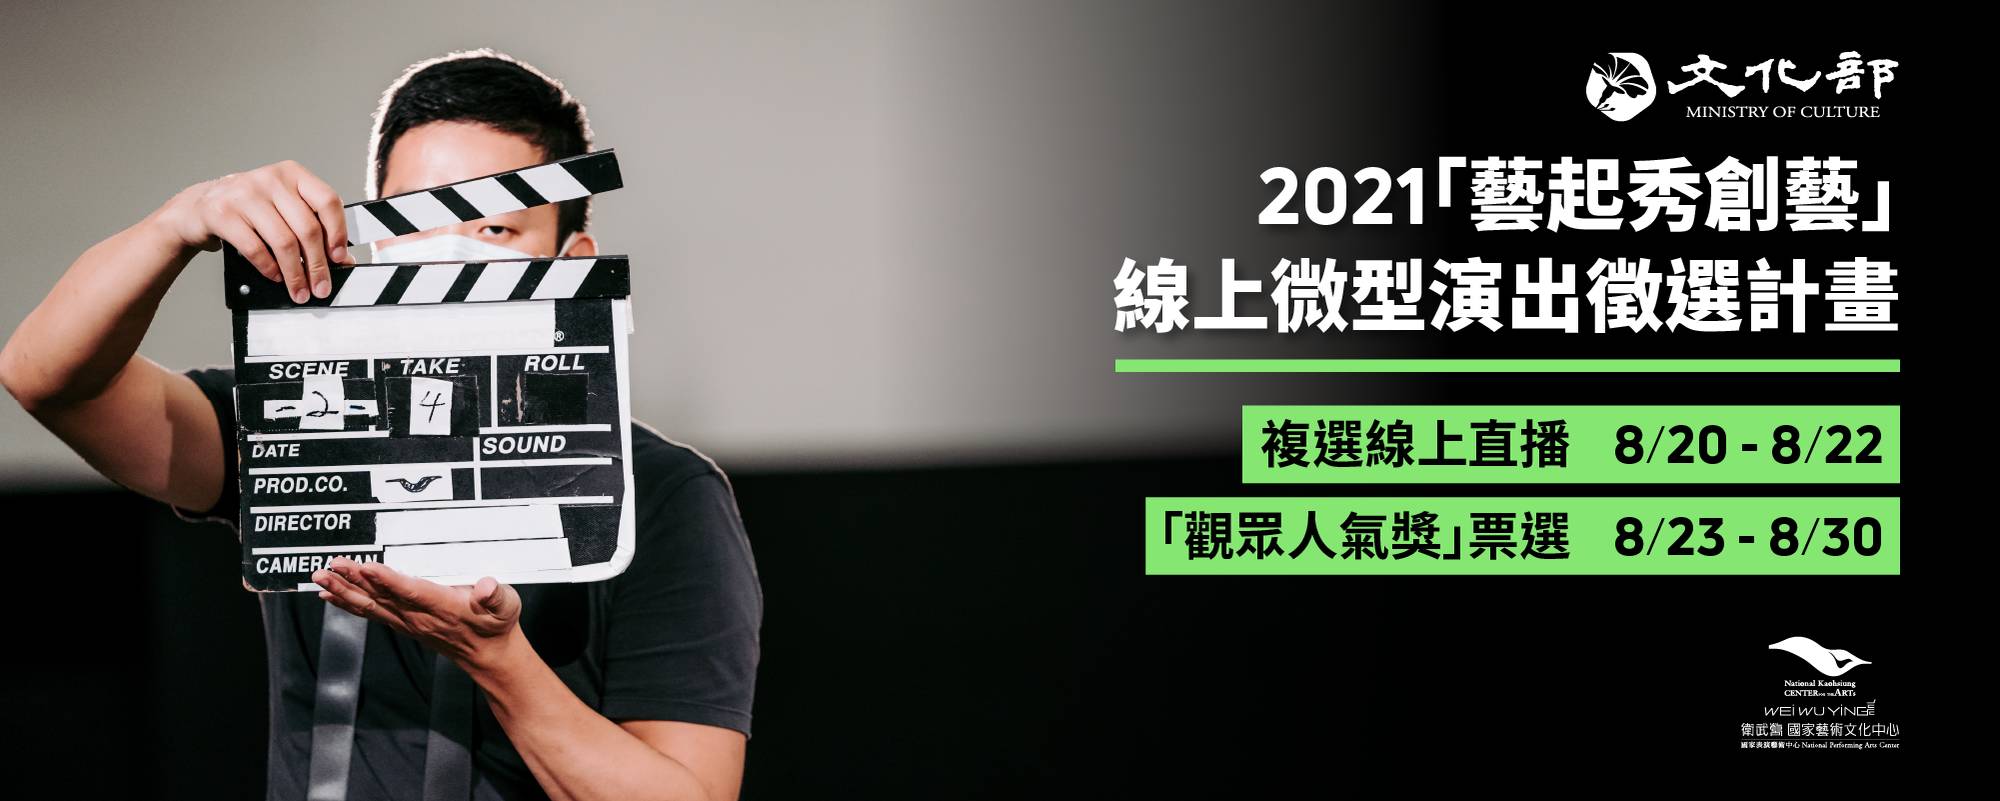 文化部 2021「藝起秀創藝 」線上微型演出